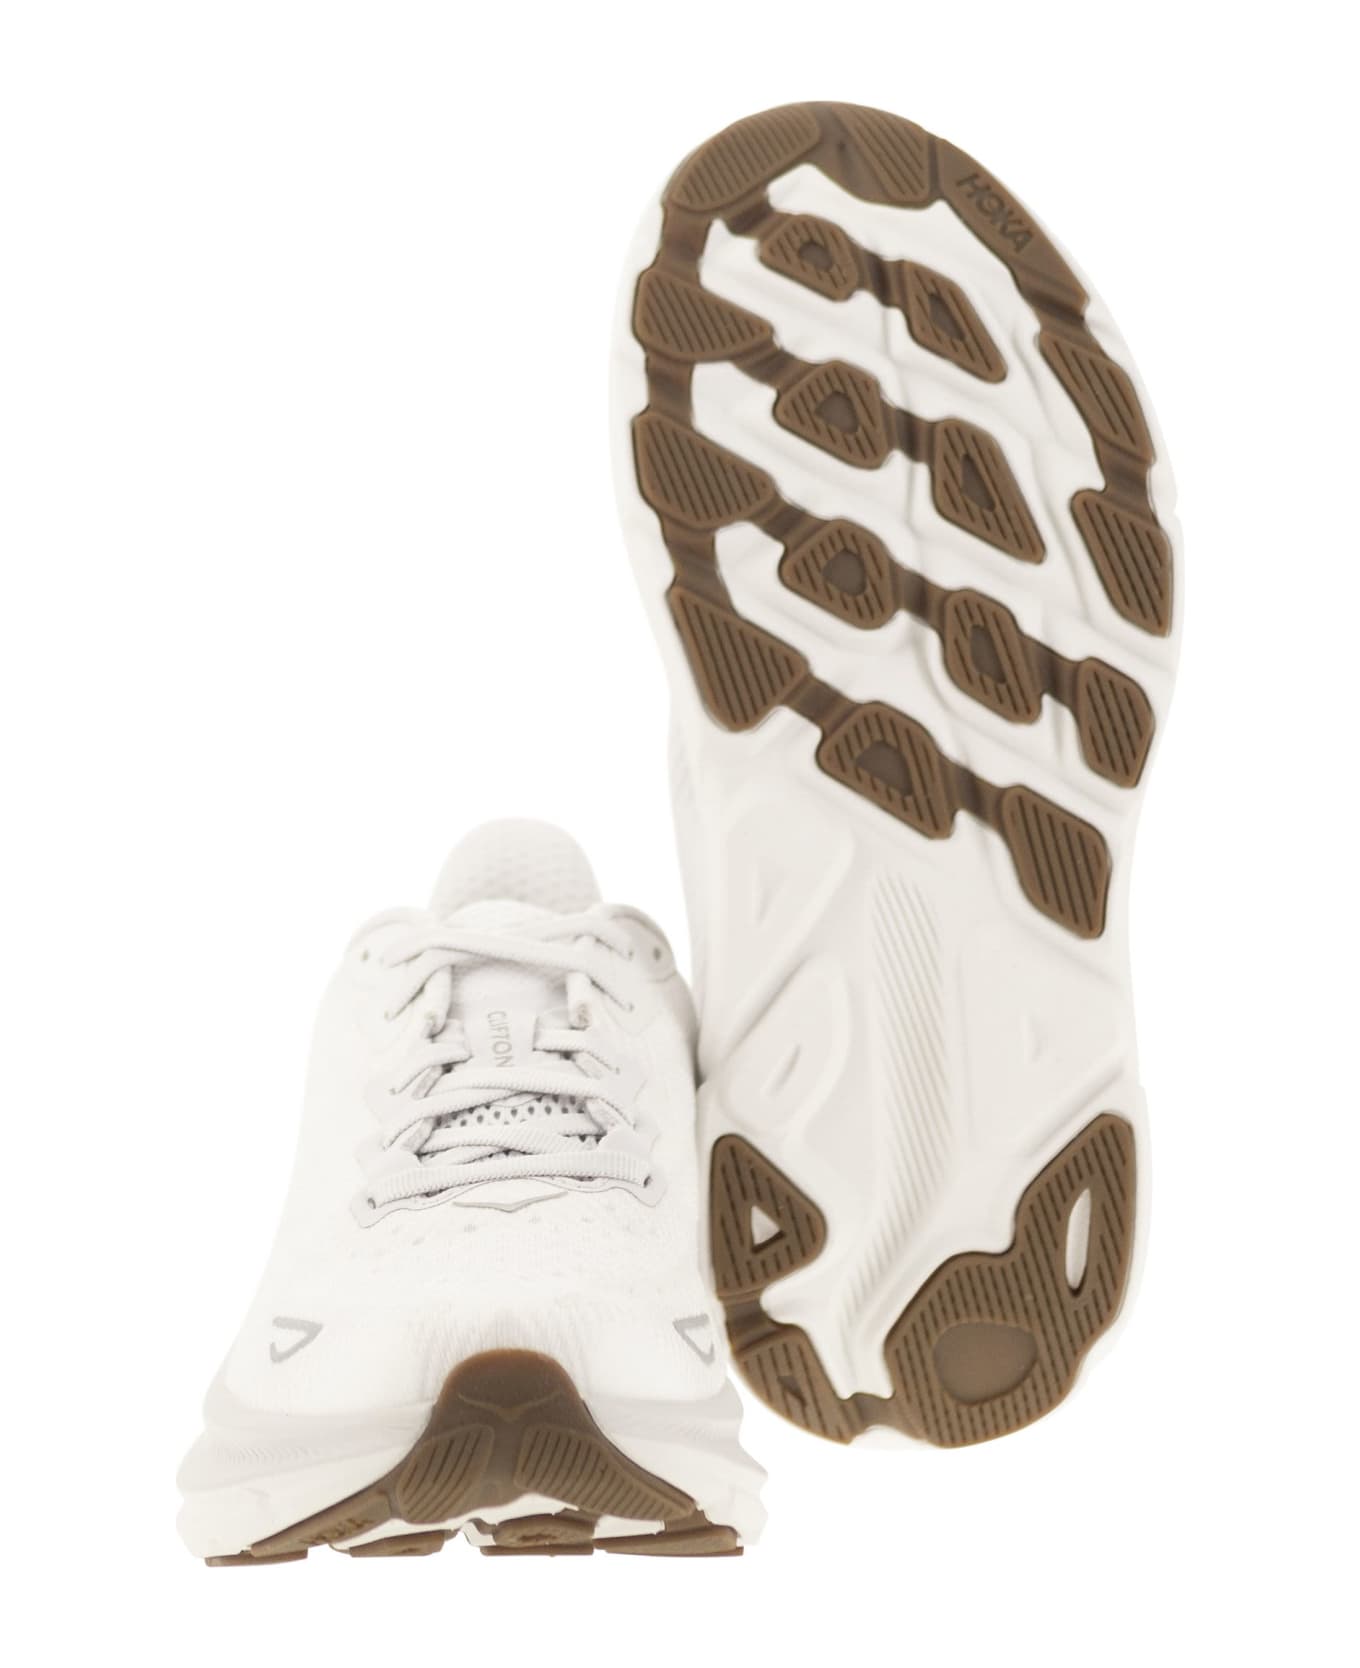 Hoka Clifton 9 - Breathable Sports Shoe - White スニーカー